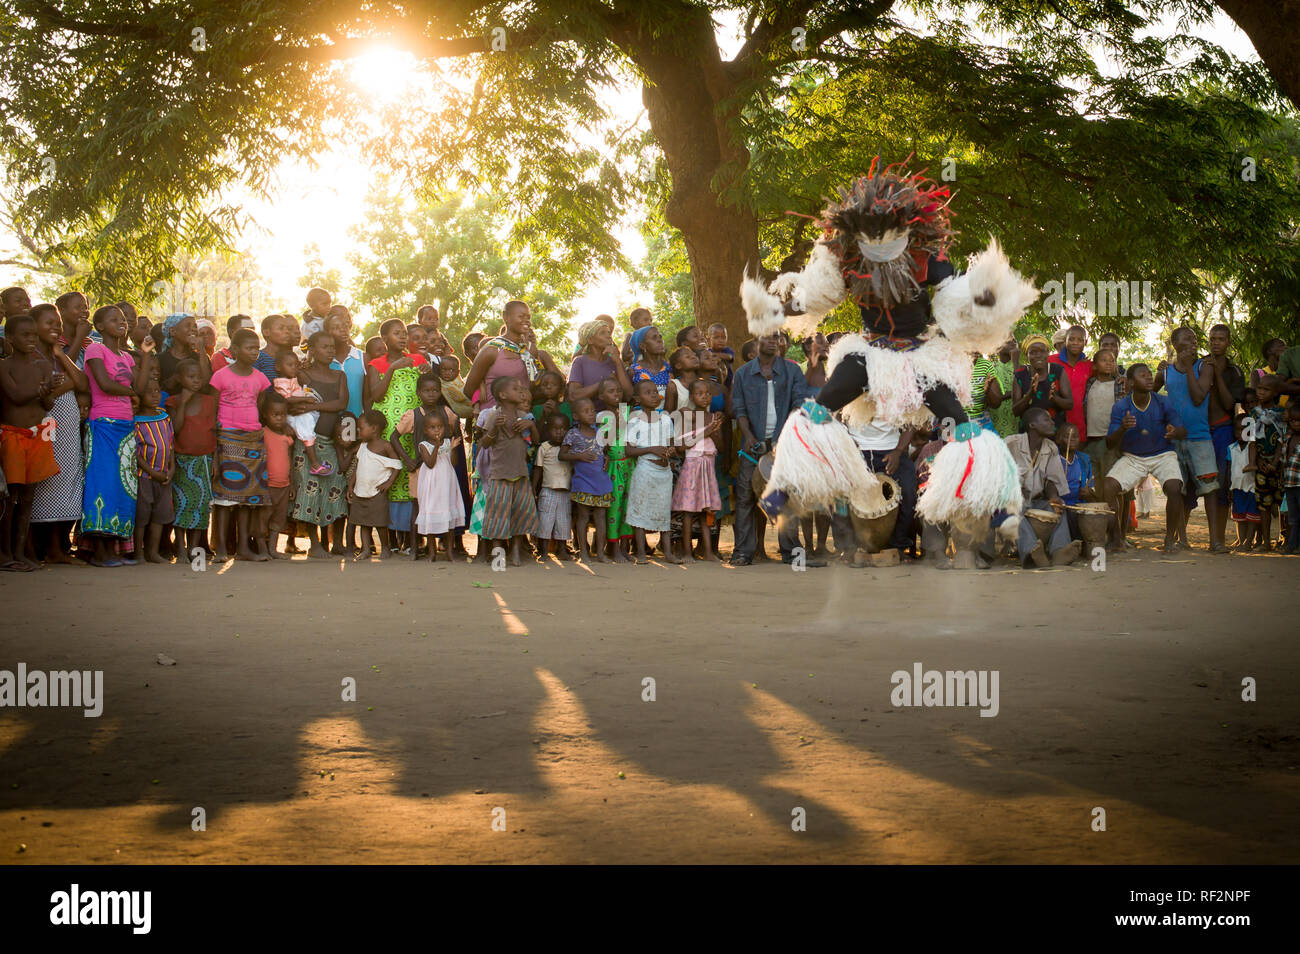 Le Gule Wamkulu dancer sauts pour une foule de spectateurs près de Chikwawa, le Malawi, le Gule Wamkulu est une danse rituelle exécutée par le peuple Chewa. Banque D'Images